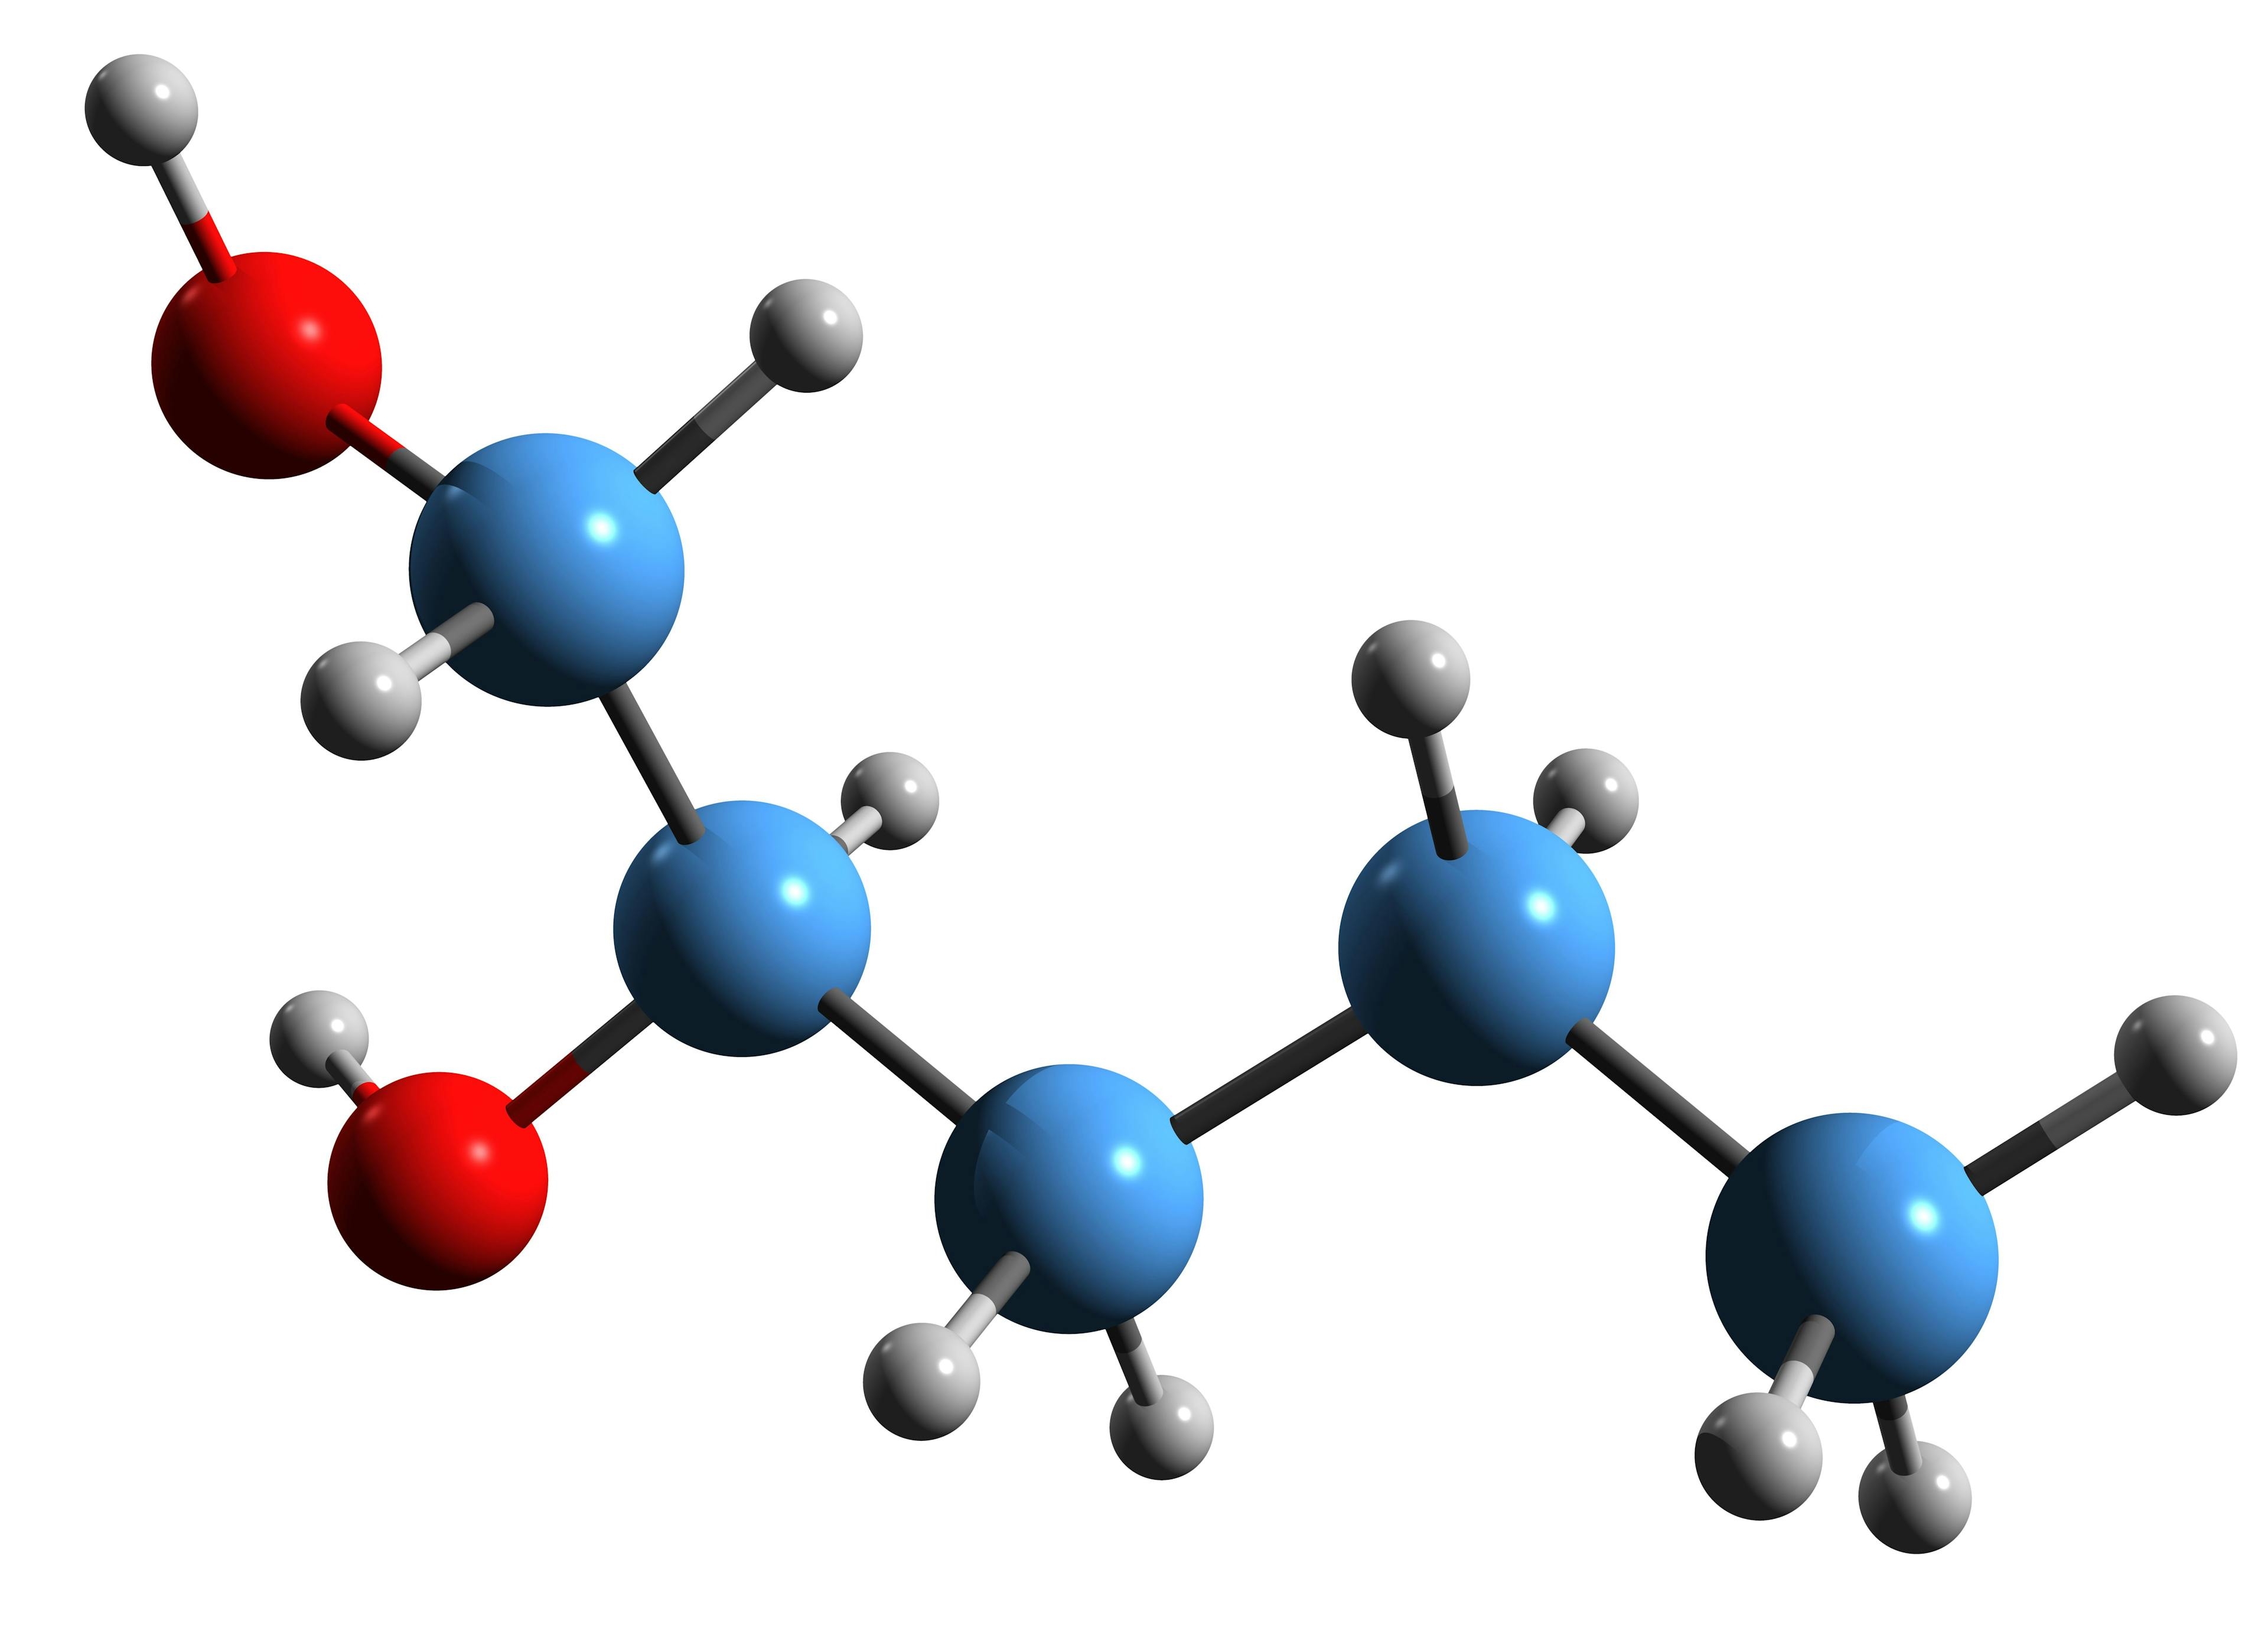 3D image of Pentylene Glycol skeletal formula - molecular chemical structure of Methylethylene glycol isolated on white background | Image Credit: © kseniyaomega - stock.adobe.com